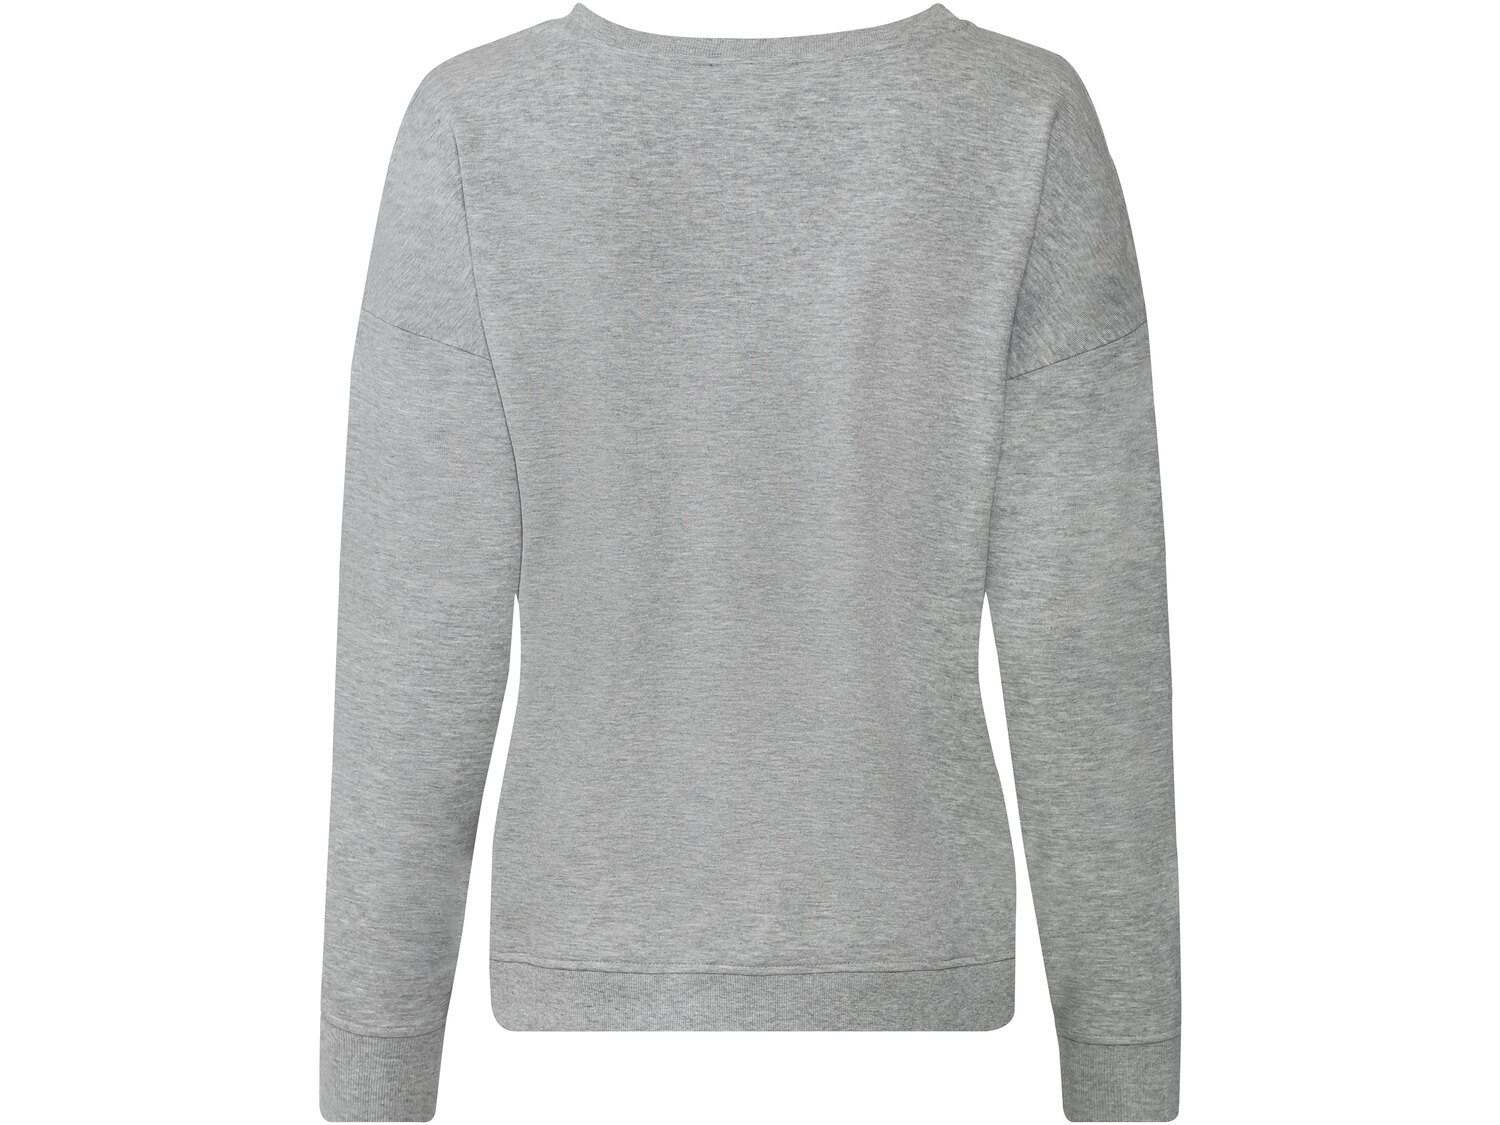 Bluza damska Esmara, cena 34,99 PLN 
- rozmiary: XS-L
- 80% bawełny, 20% poliestru
Dostępne ...